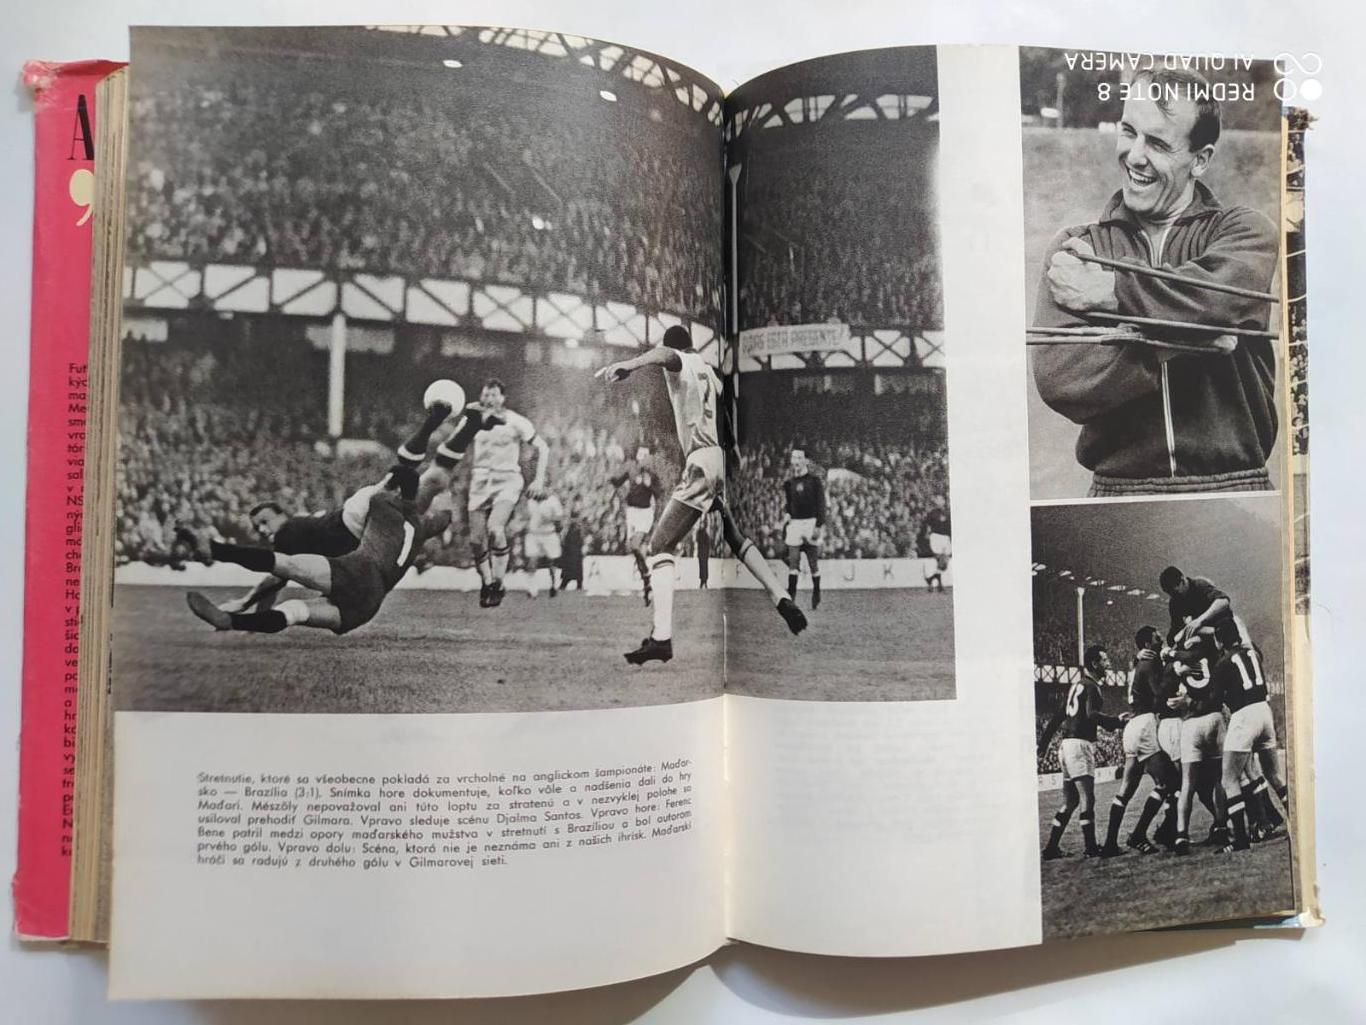 Imrich Hornacek Anglicko 1966 Чемпионат мира по футболу в Англии 1966 г. 5